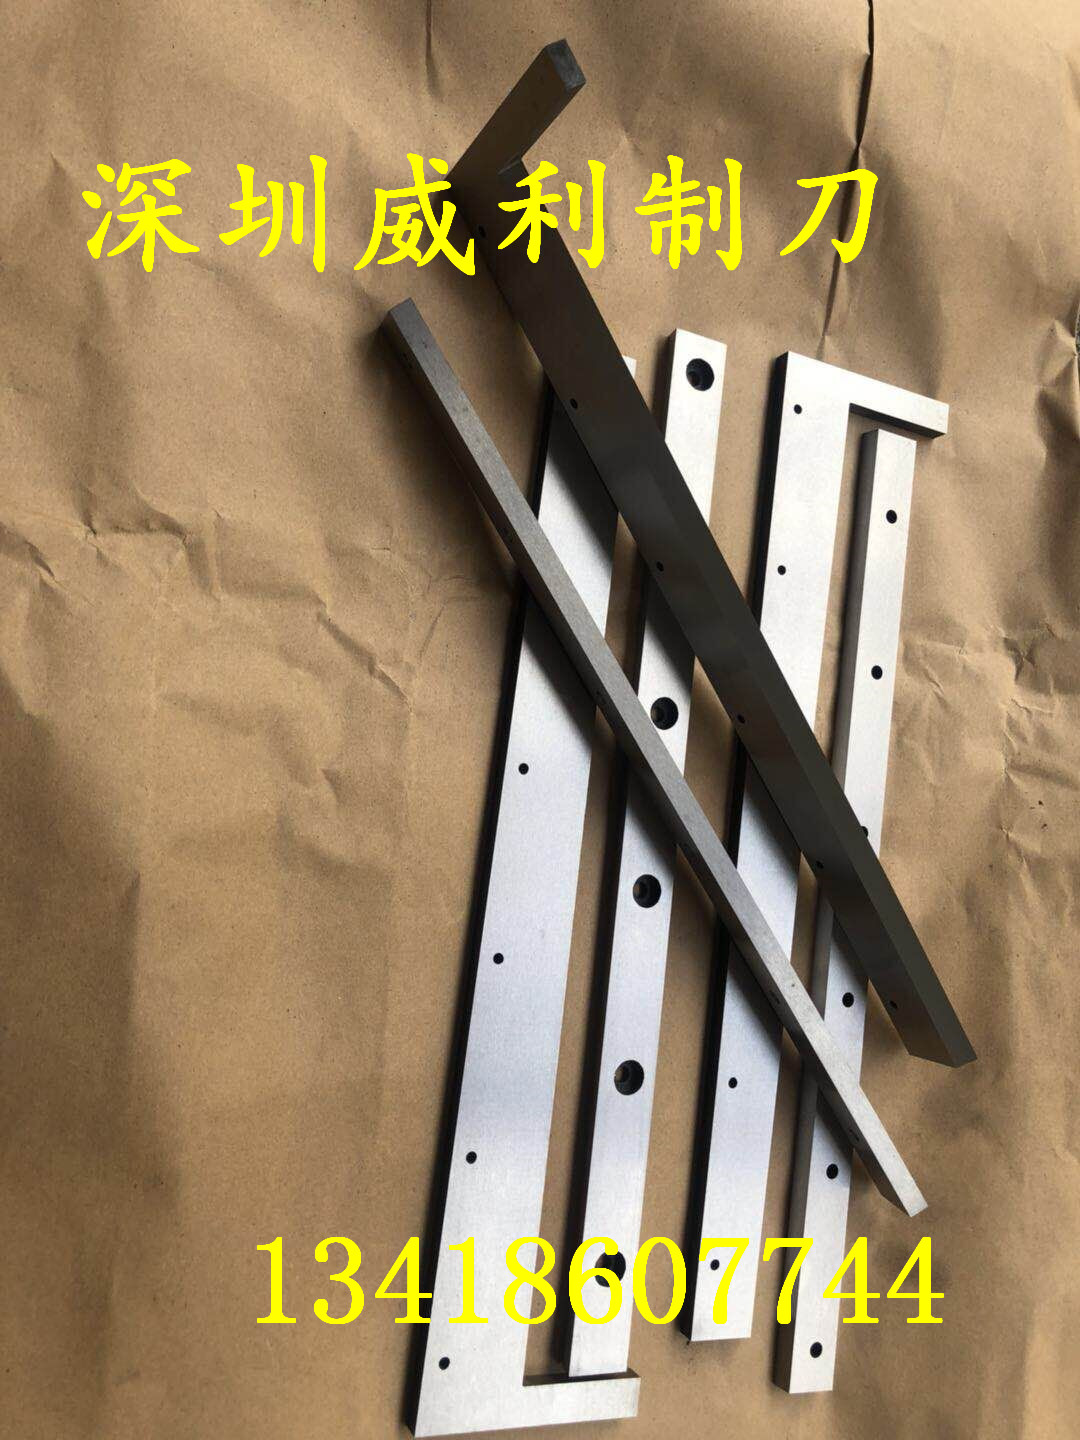 深圳东莞惠州制袋裁切刀片 定做切刀片 切纸刀片厂家图片